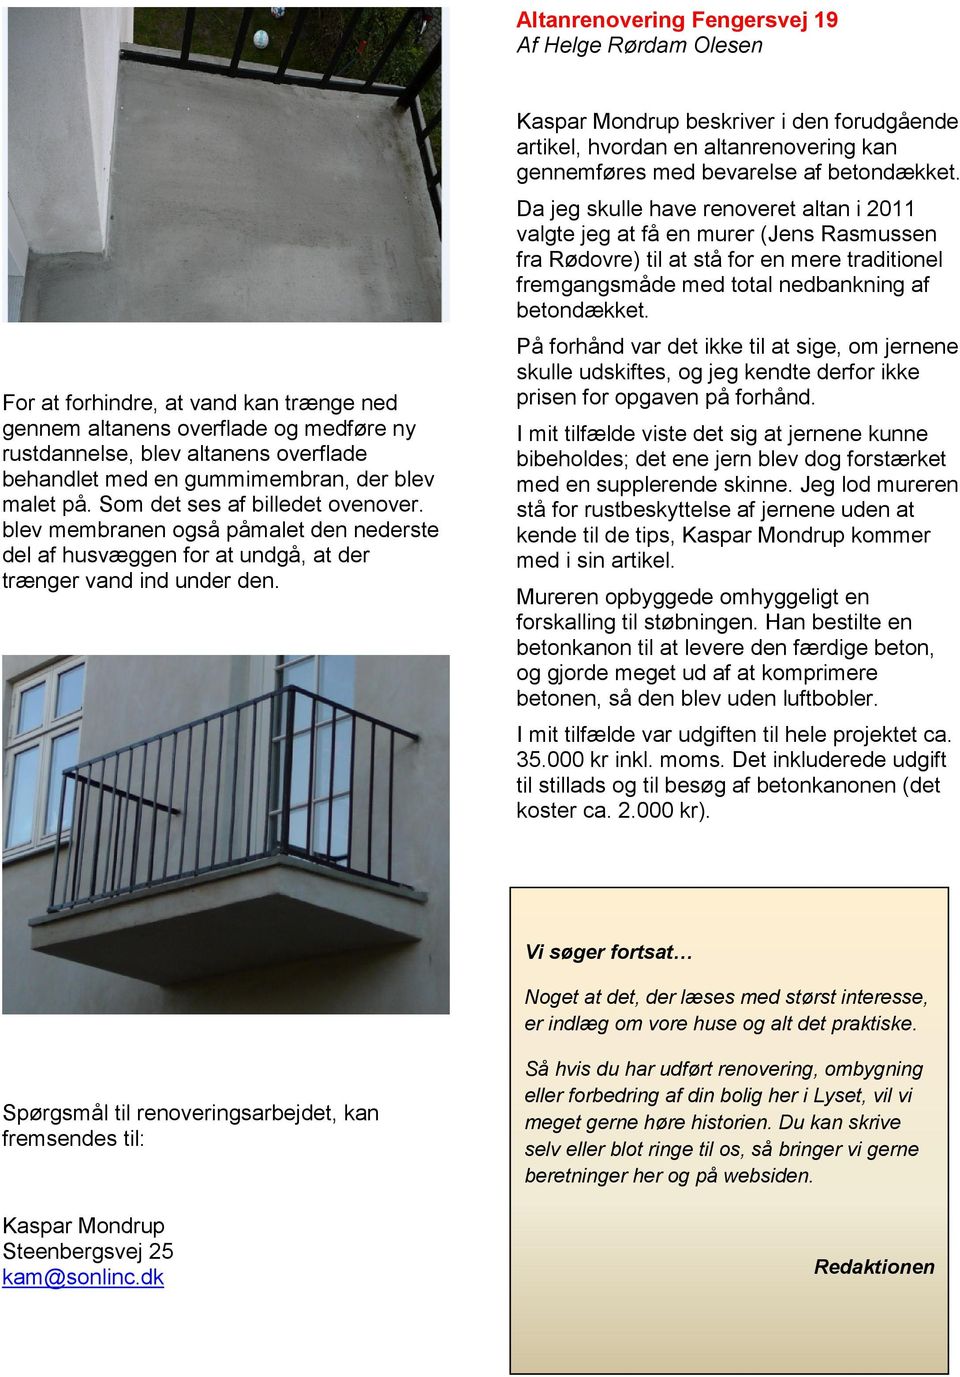 Kaspar Mondrup beskriver i den forudgående artikel, hvordan en altanrenovering kan gennemføres med bevarelse af betondækket.